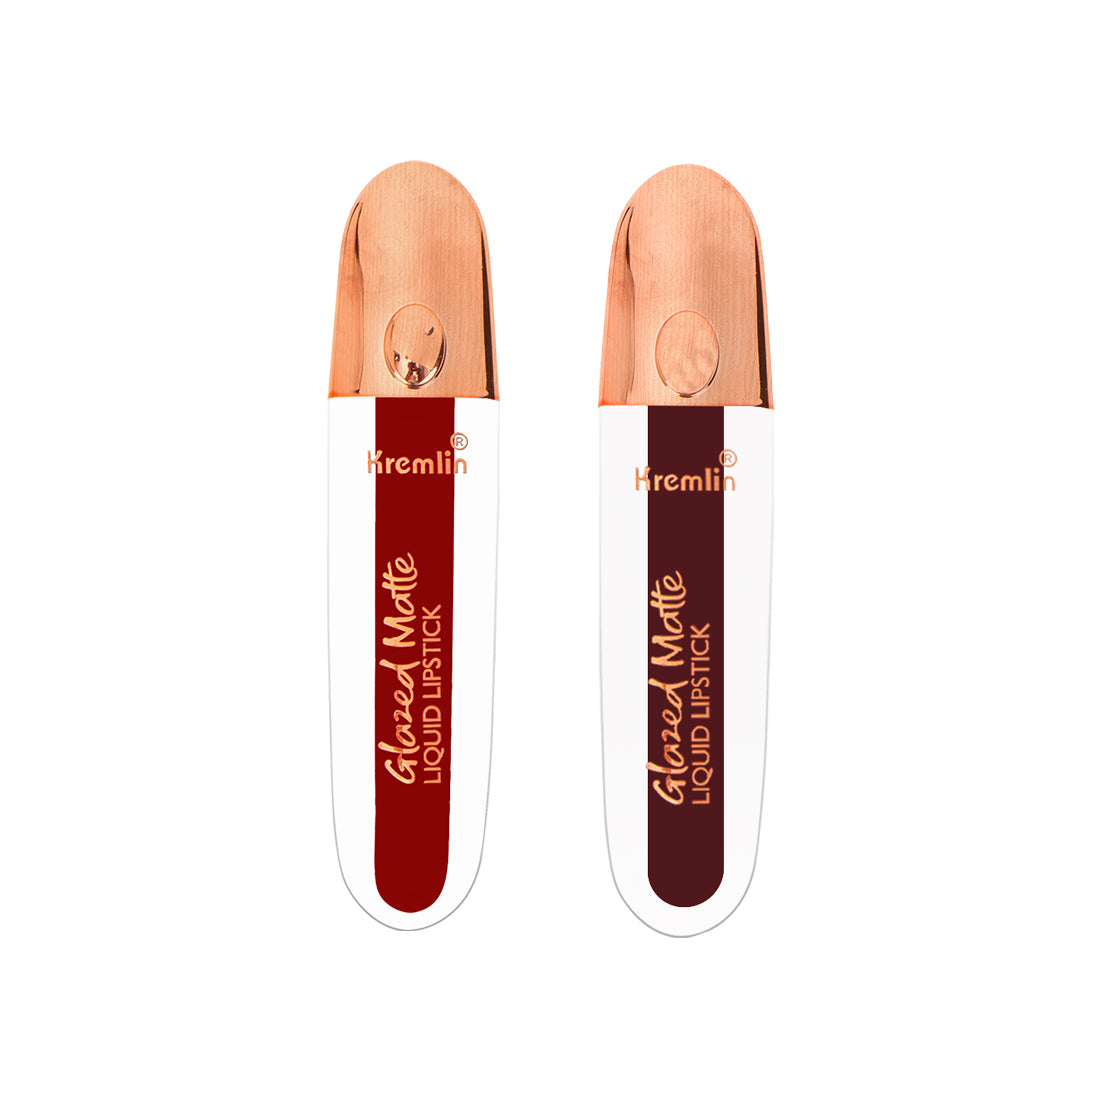 Kremlin Glazed Matte Liquid Lipstick Lips Pack of 2 (Fiery Queen,Wicked)